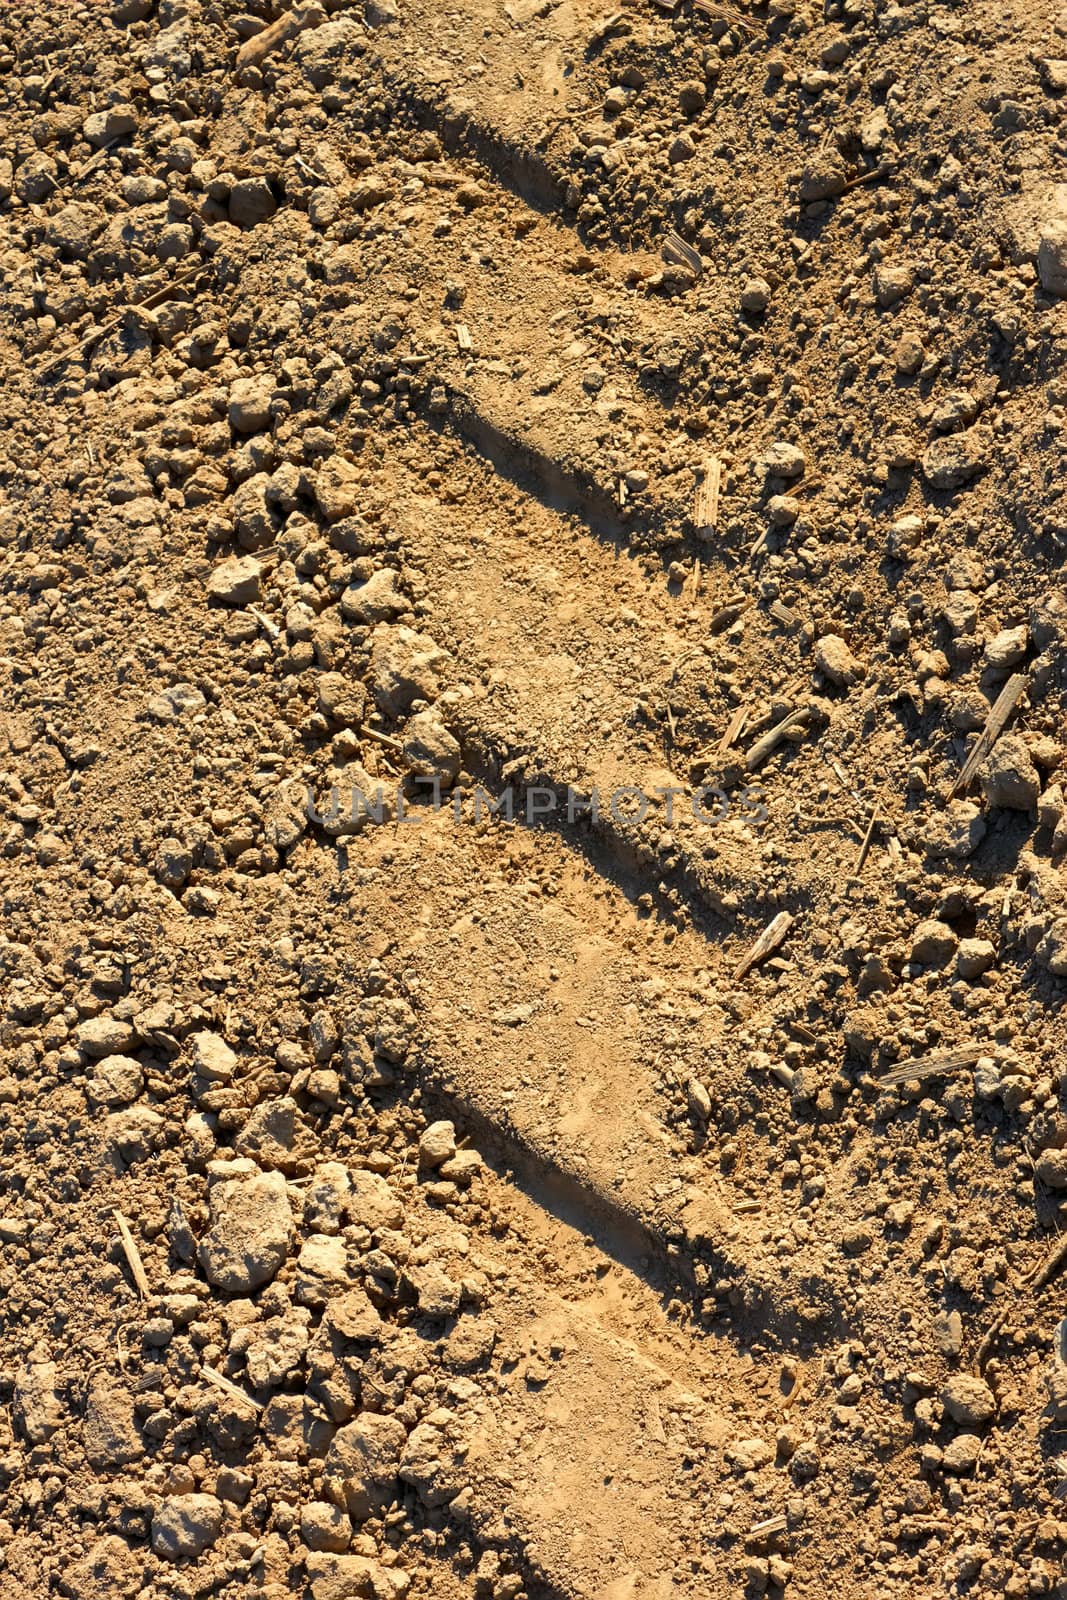 Tread pattern on soil by qiiip